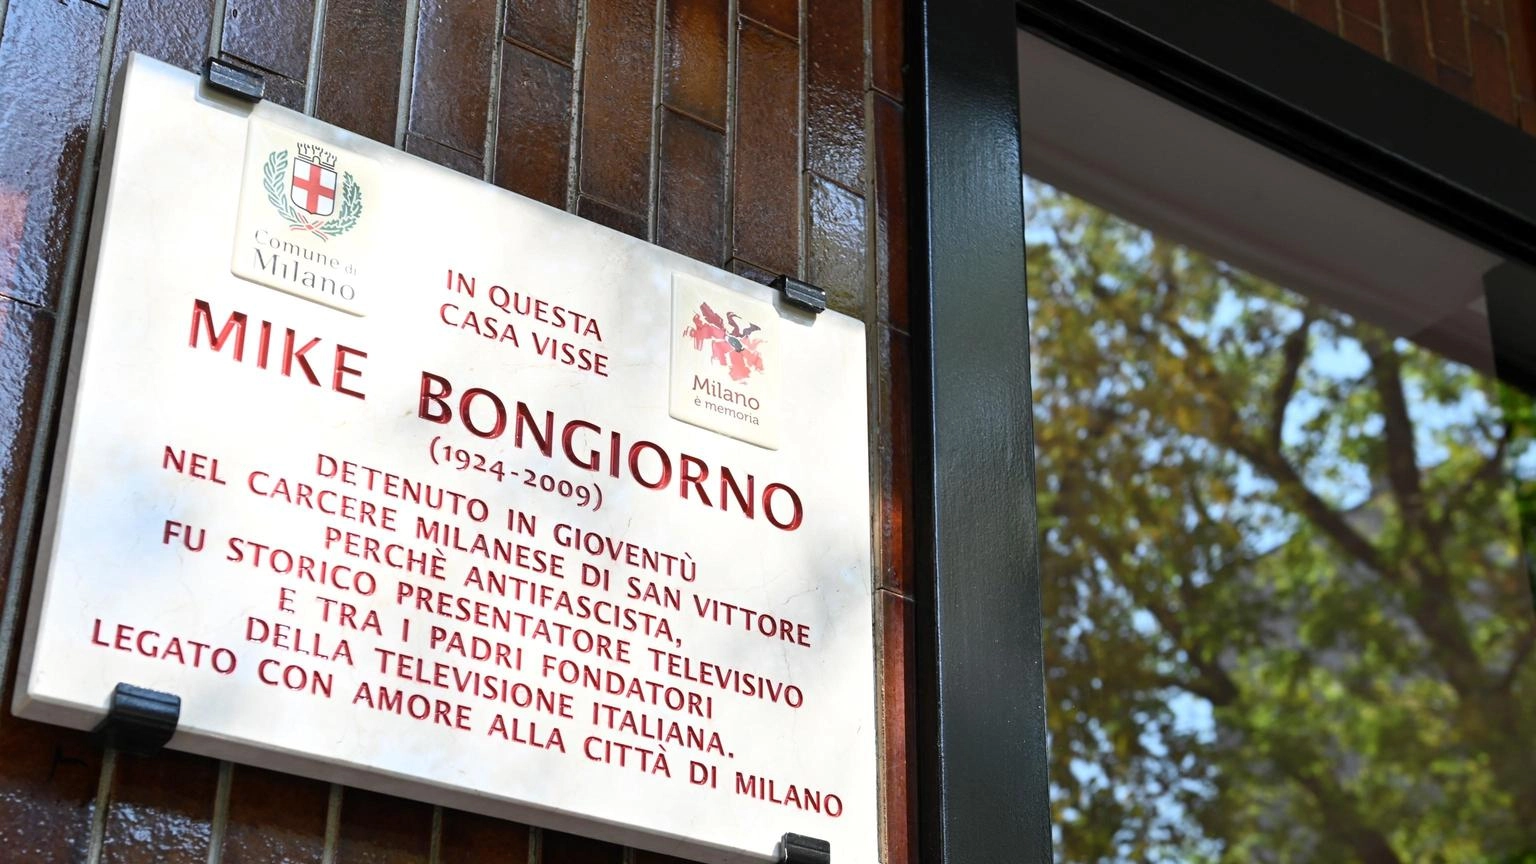 Milano ricorda il giovane partigiano Mike Bongiorno